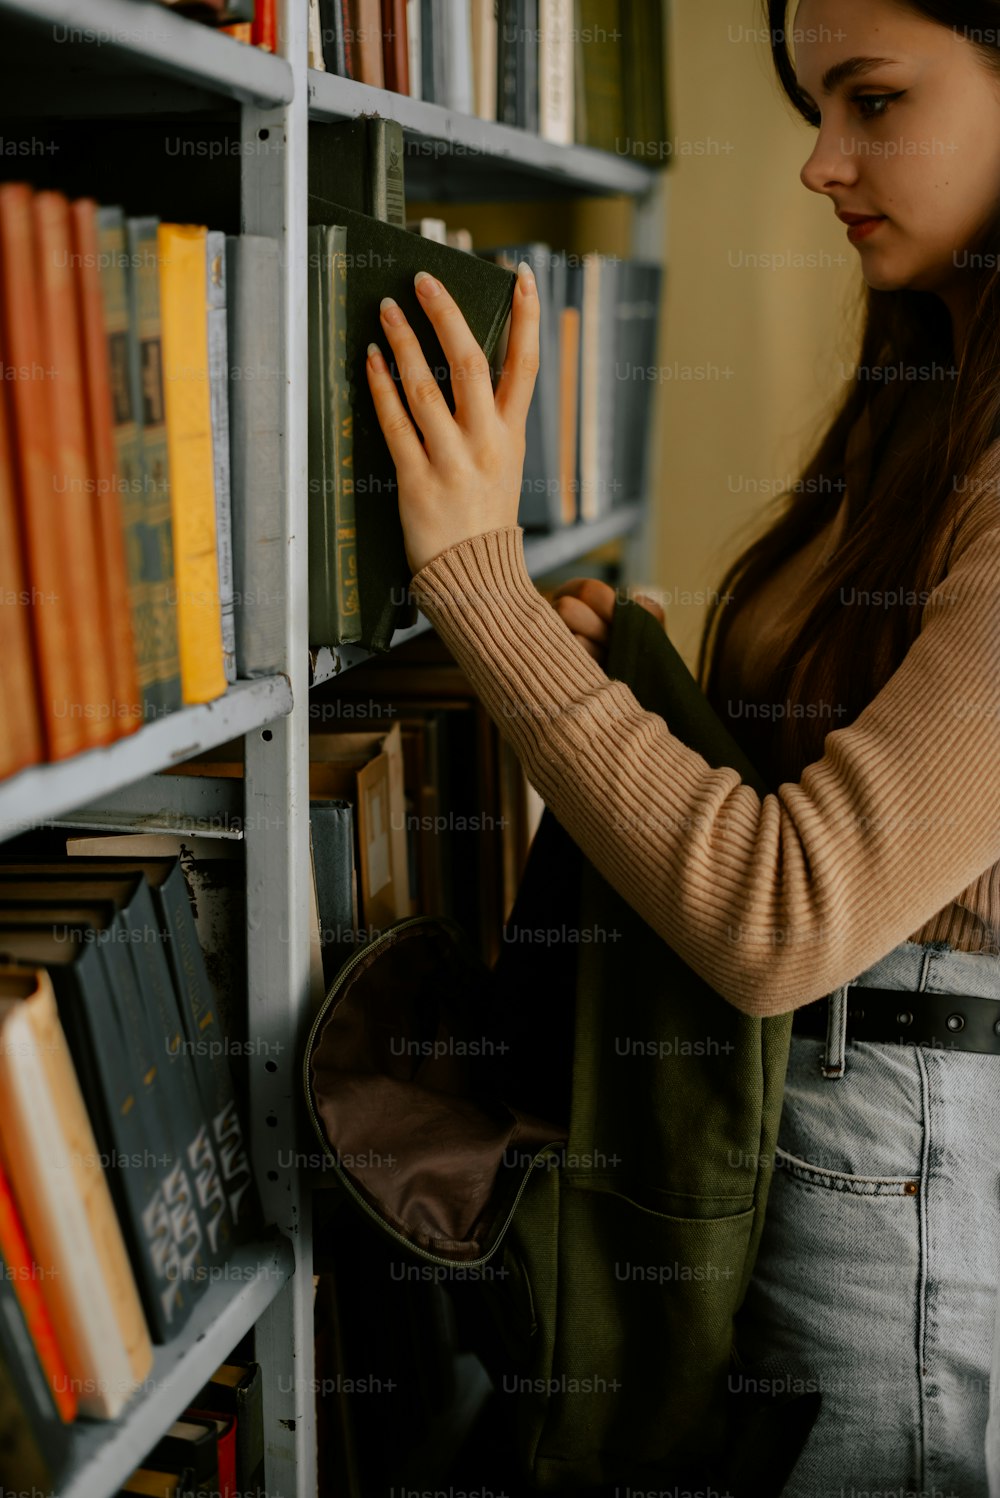 Una mujer está mirando libros en un estante de libros